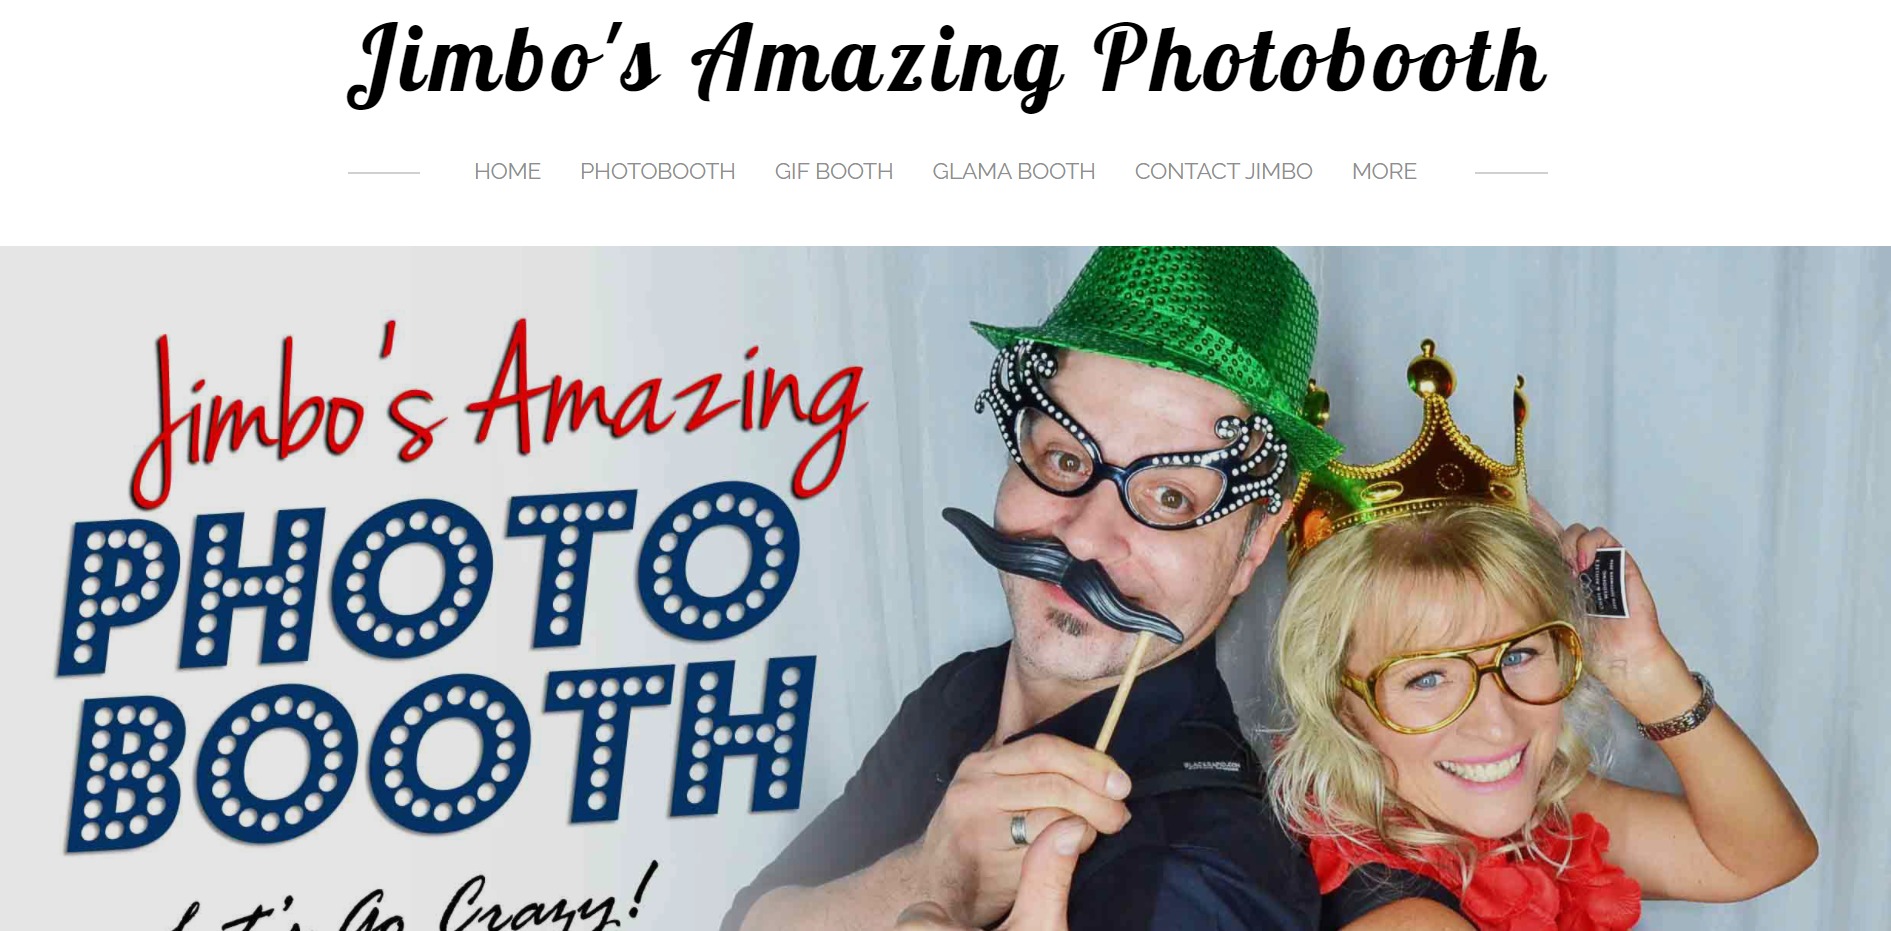 Jimbo's Amazing Photobooth